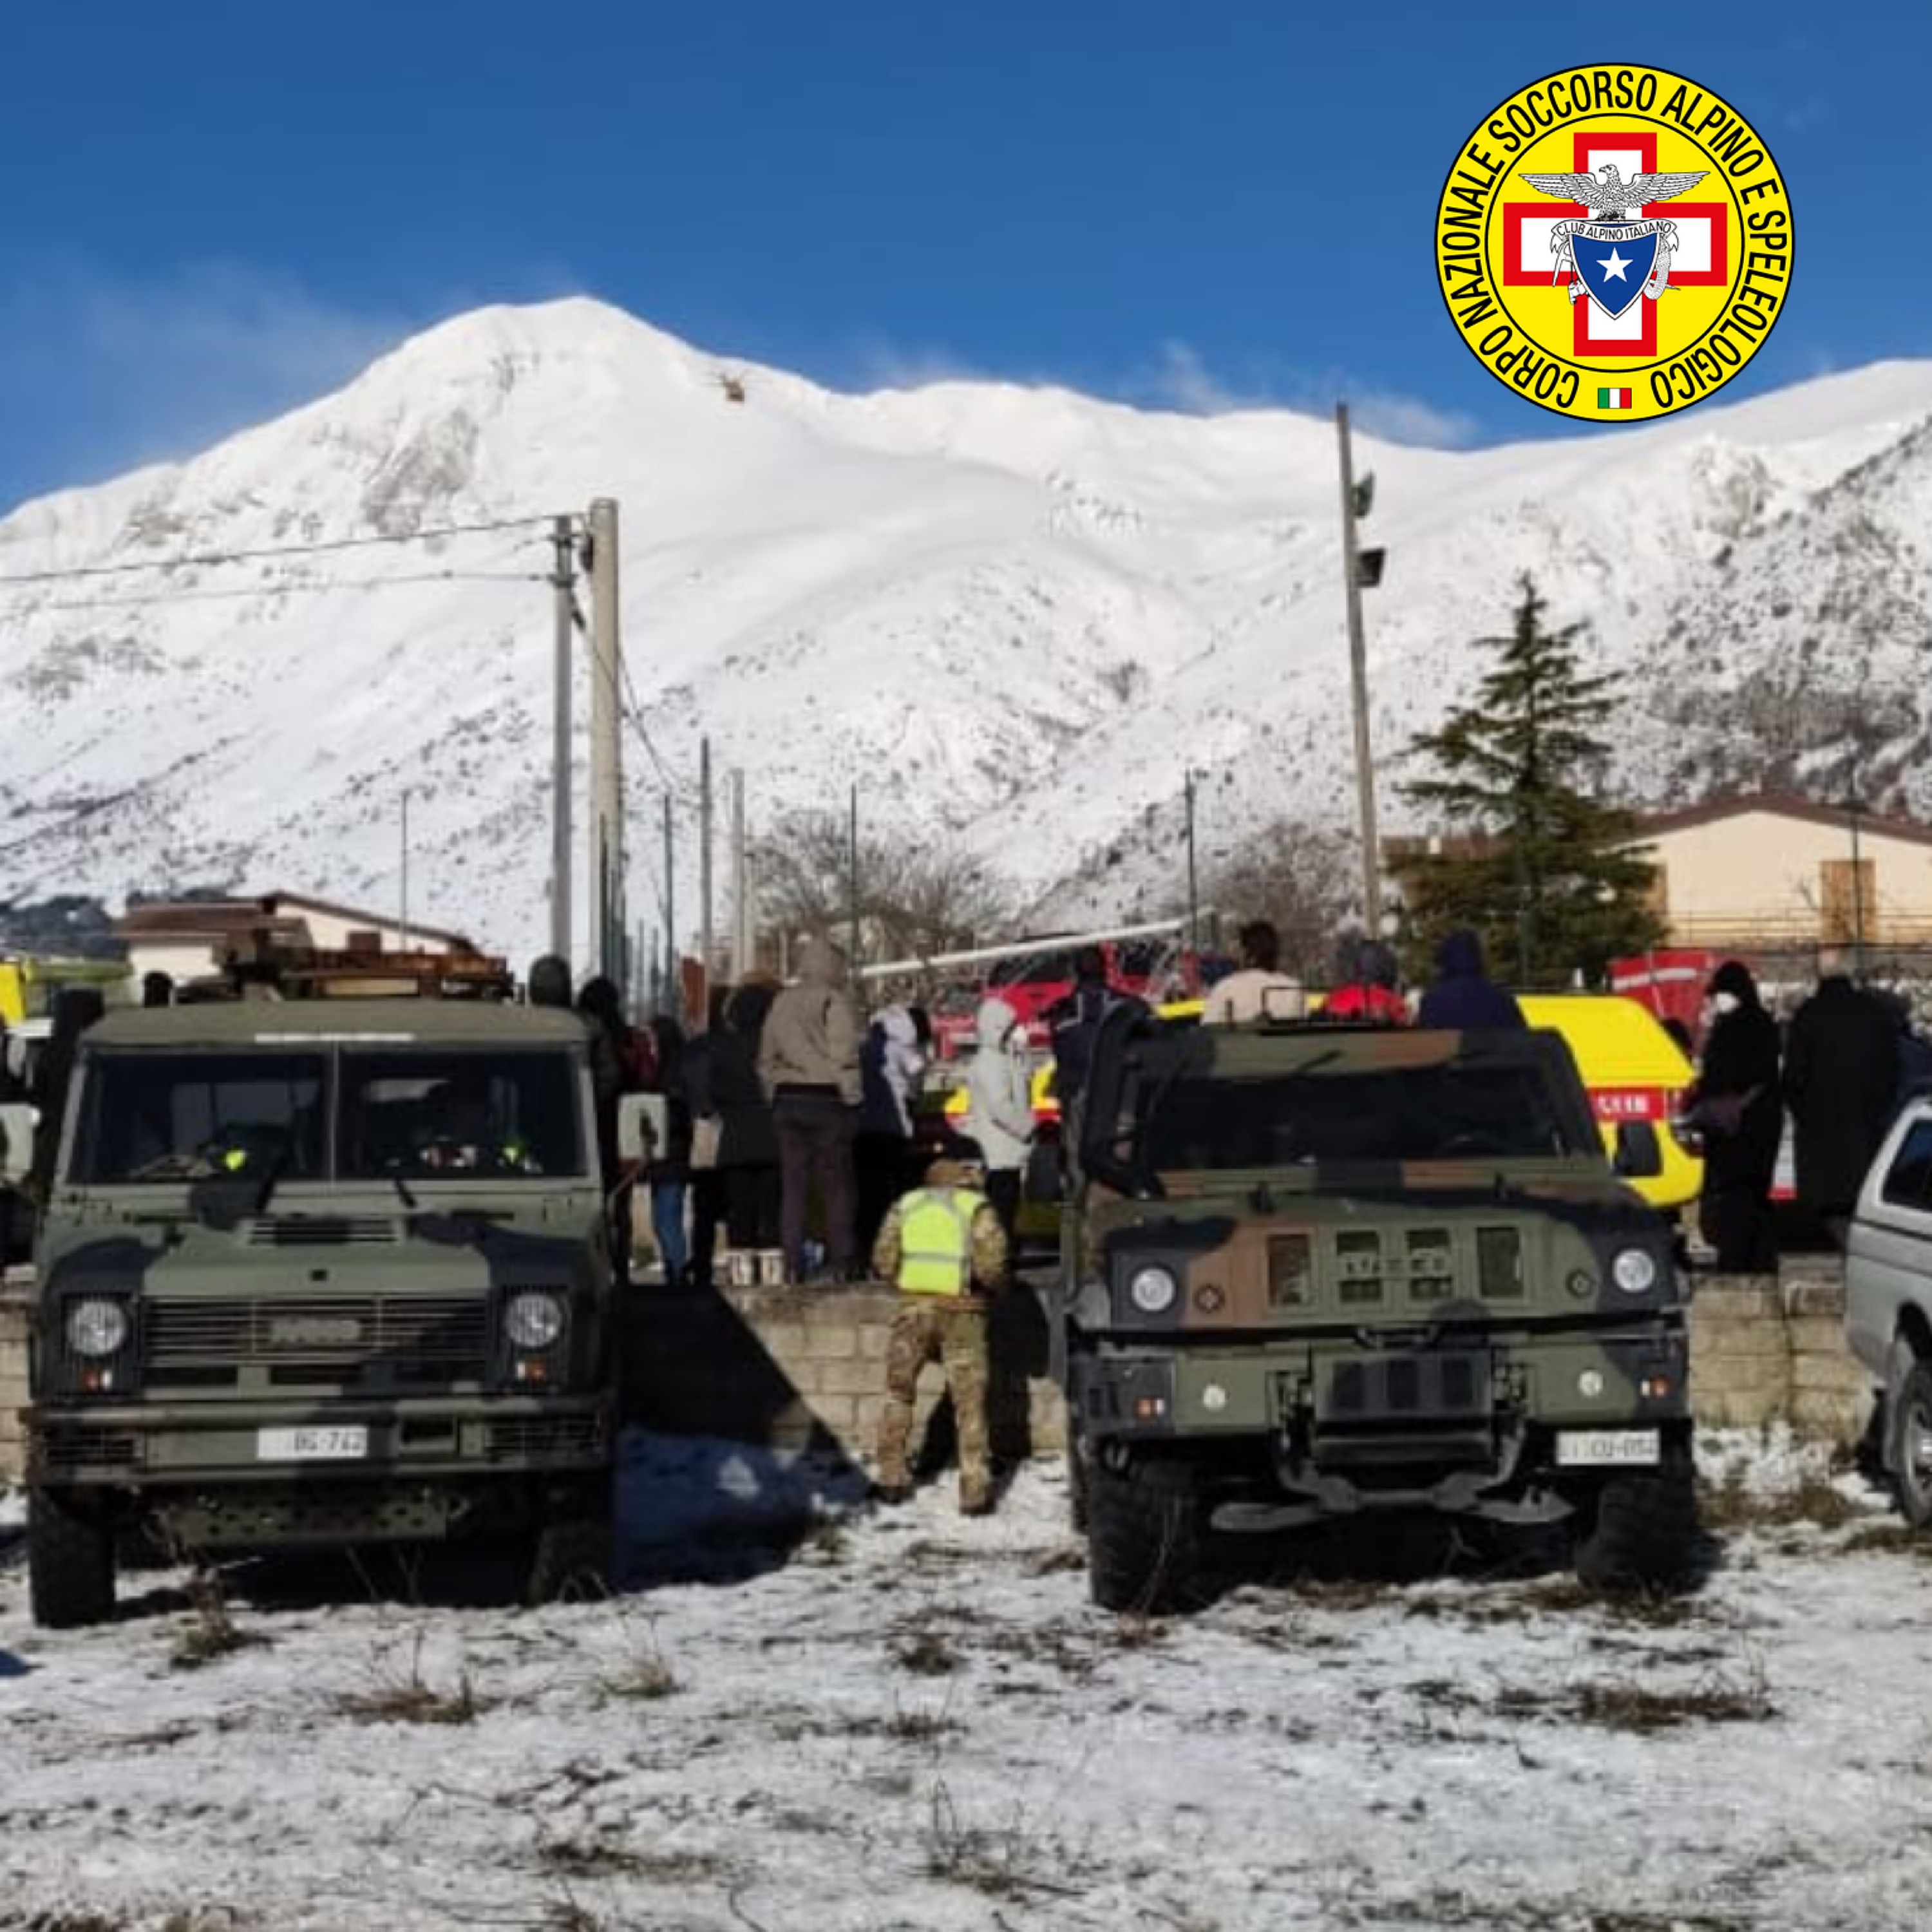 Riprese le ricerche dei 4 dispersi sul Monte Velino con l'impiego di 51 soccorritori, altri 20 in arrivo e unità Cinofile